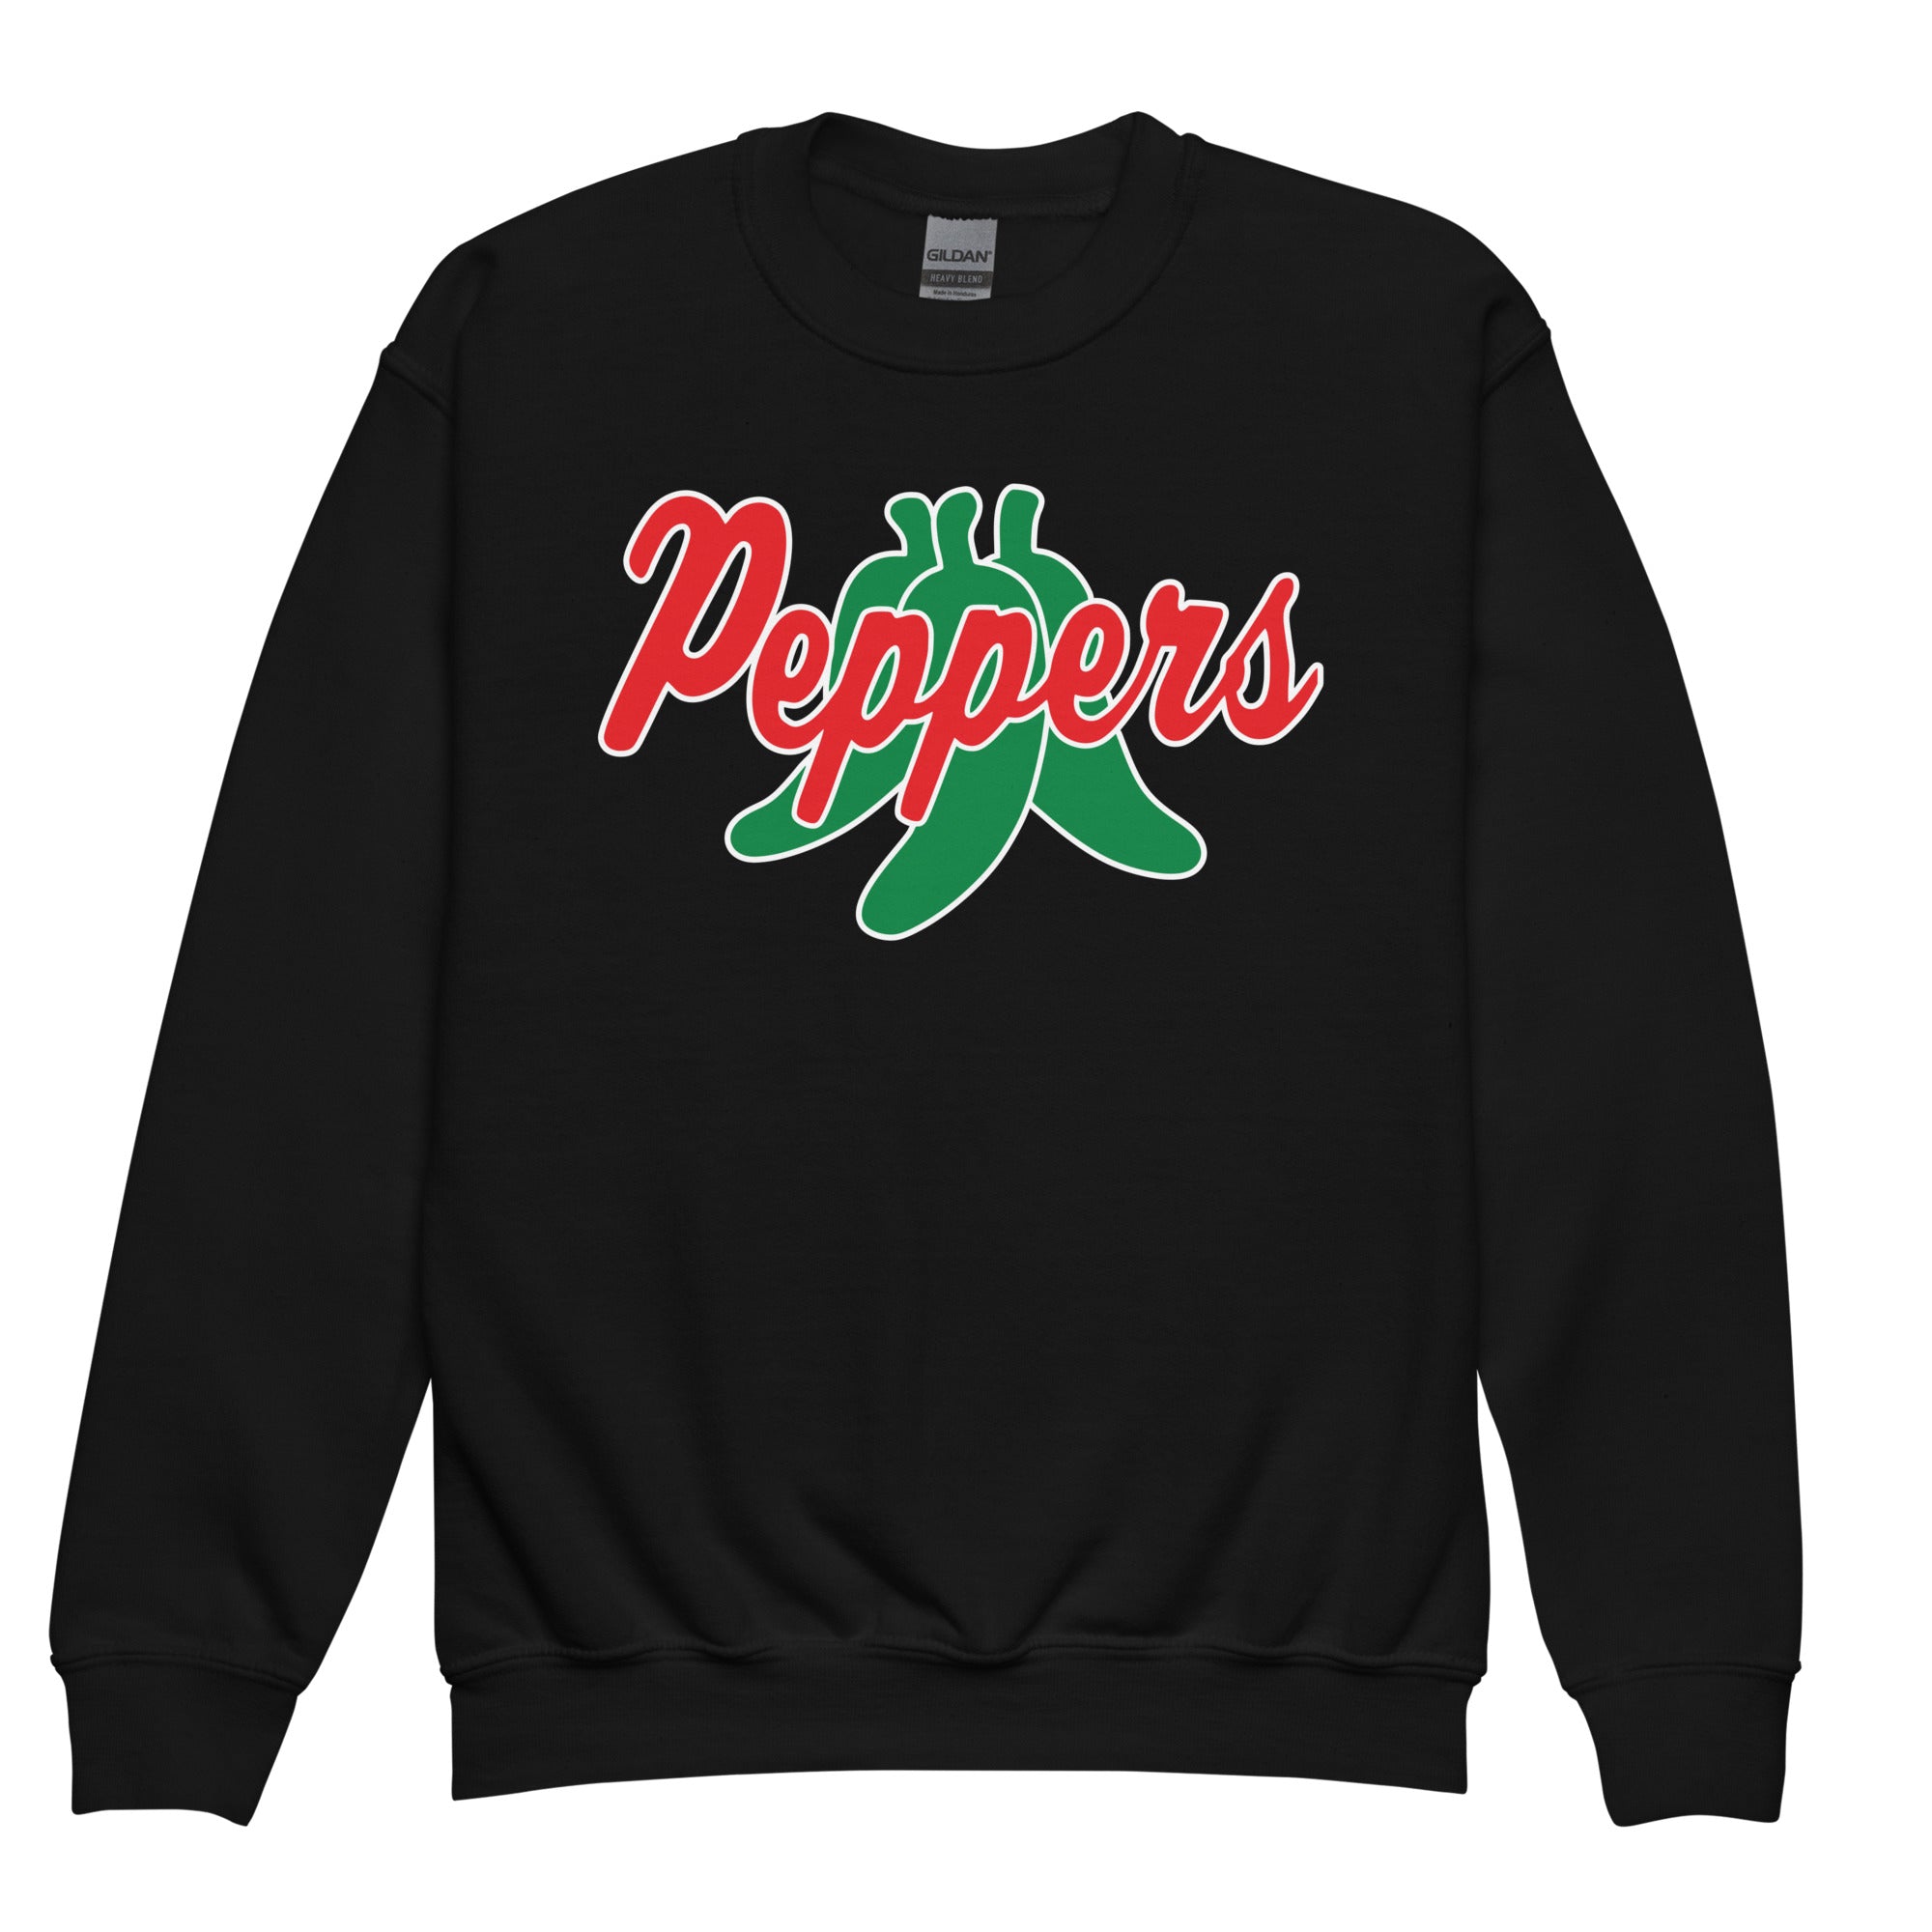 Peppers Softball Youth crewneck sweatshirt